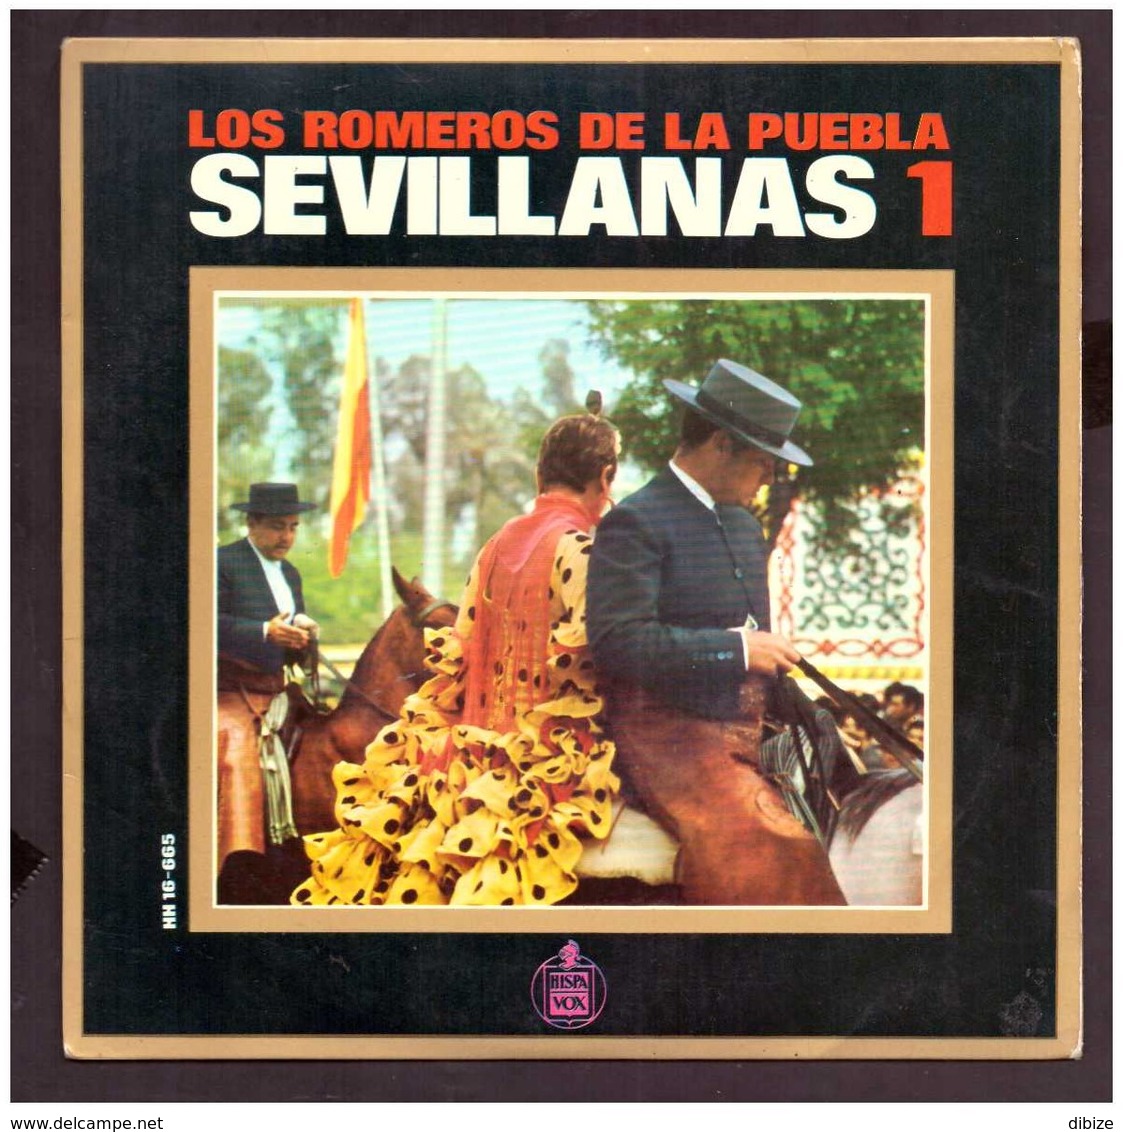 España. Disco De Vinilo A 45 Rpm. Los Romeros De La Puebla. Sevillanas 1. Por La Arena Adelante... Buena Condicion. - Other - Spanish Music